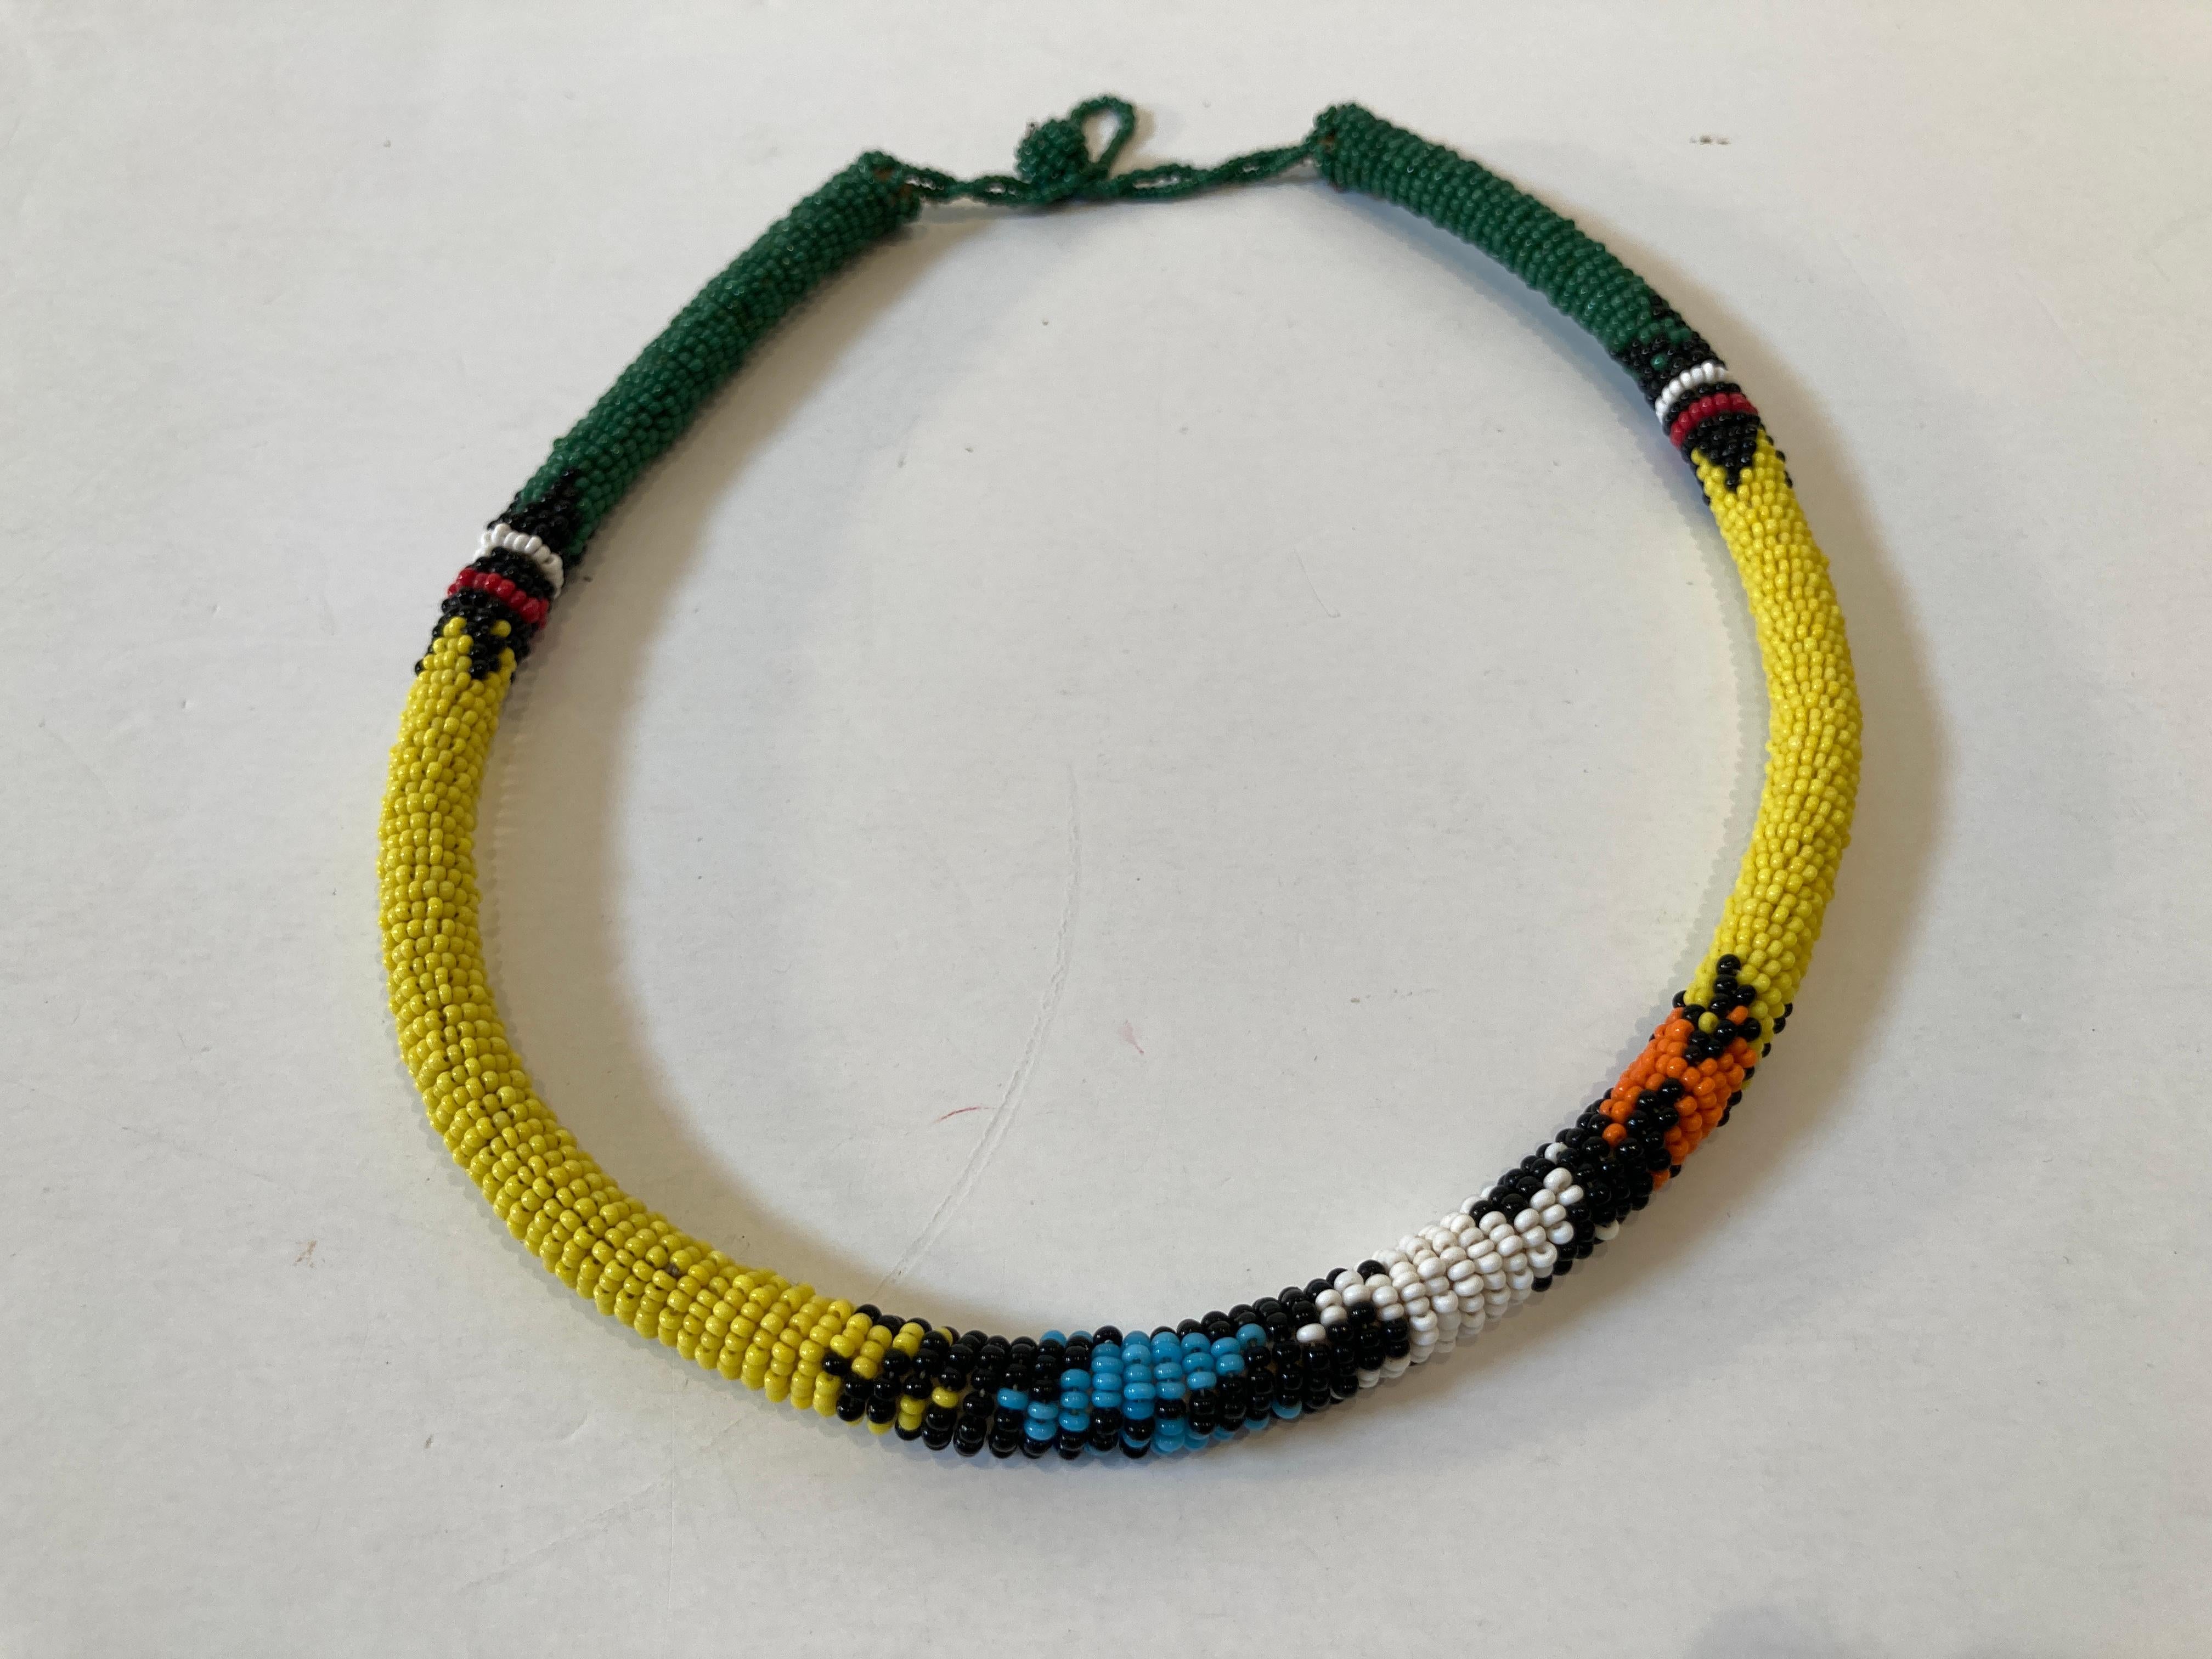 African Urembo Beaded Vintage Halskette Halskette von der Maasai Stamm Kenia
Vintage African Urembo Perlen Halskette Halsband.
Handgefertigt in Kenia vom Stamm der Maasai mit gelben, grünen, orangen und schwarzen Perlen.
Urembo bedeutet